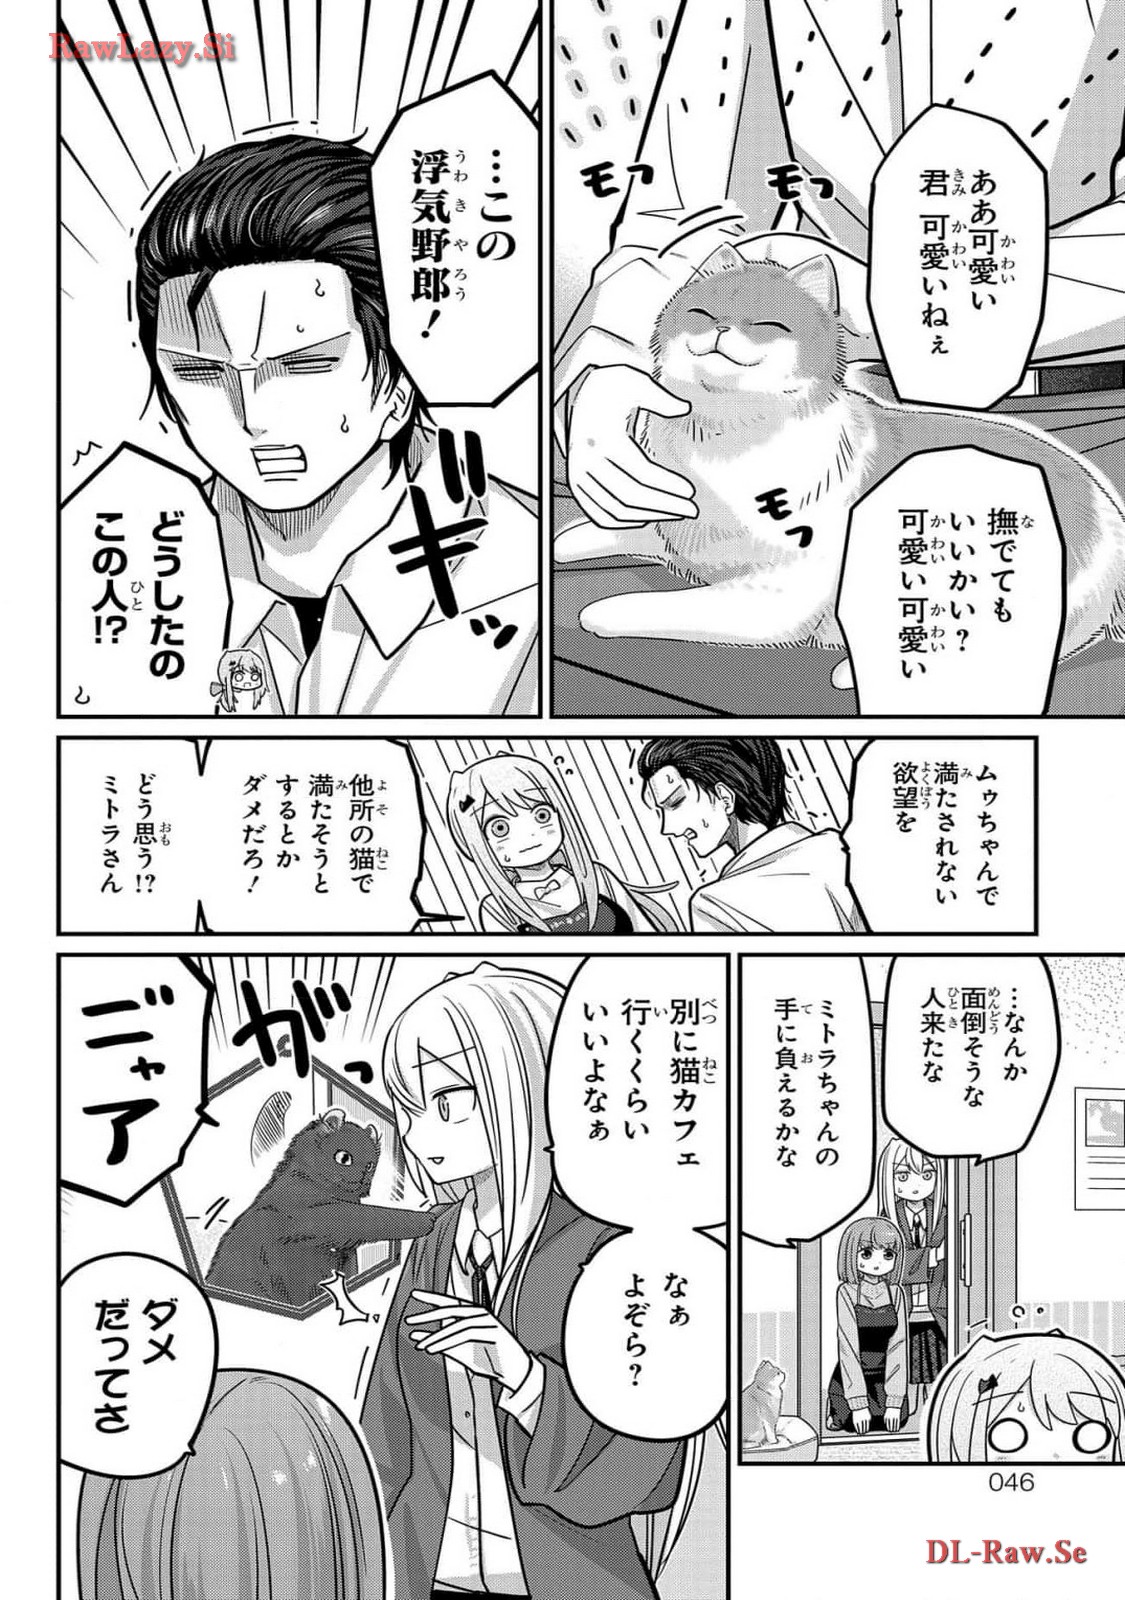 Kawaisugi Crisis - Chapter 99 - Page 8